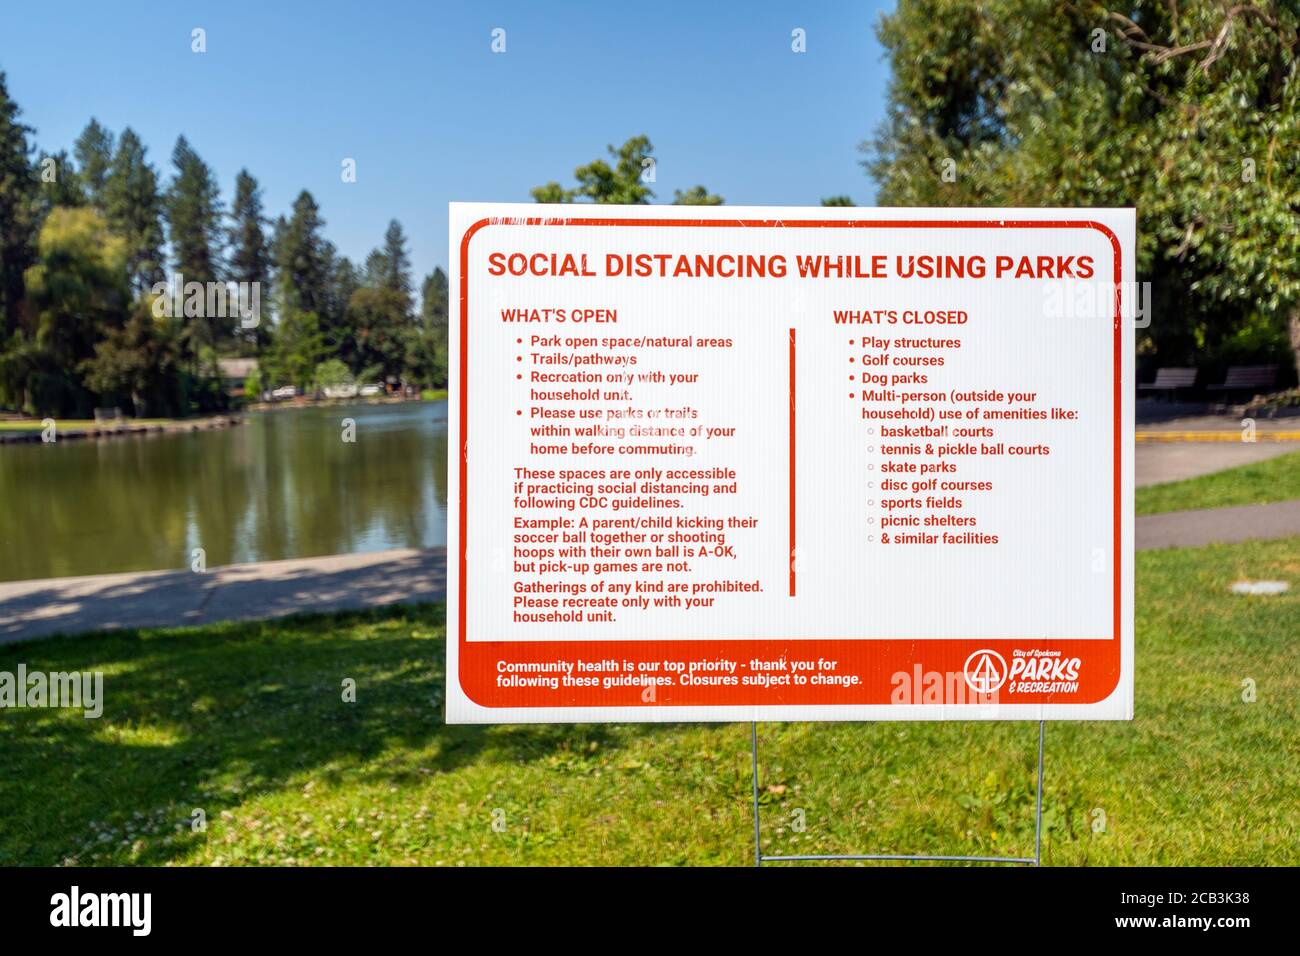 Un cartel del parque urbano en el parque público de Spokane Washington, Manito Park, ofrece información de distanciamiento social y pautas para la salud en Spokane, Washington. Foto de stock